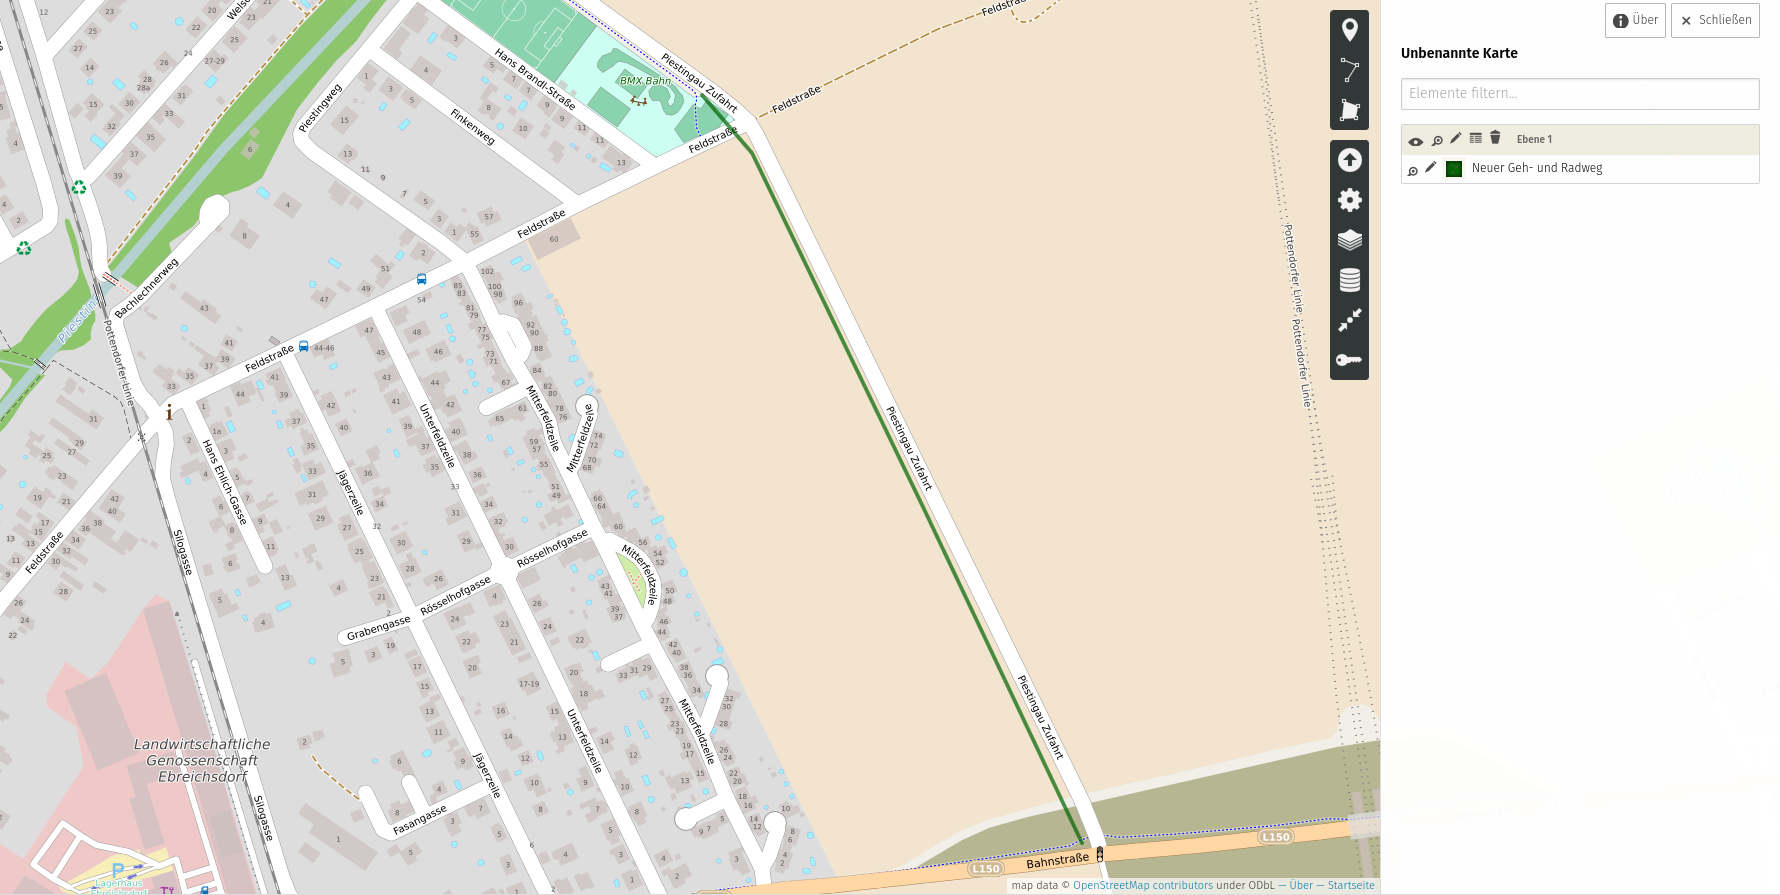 Erweiterung_neuer_Radweg Darstellung auf OpenStreetMap